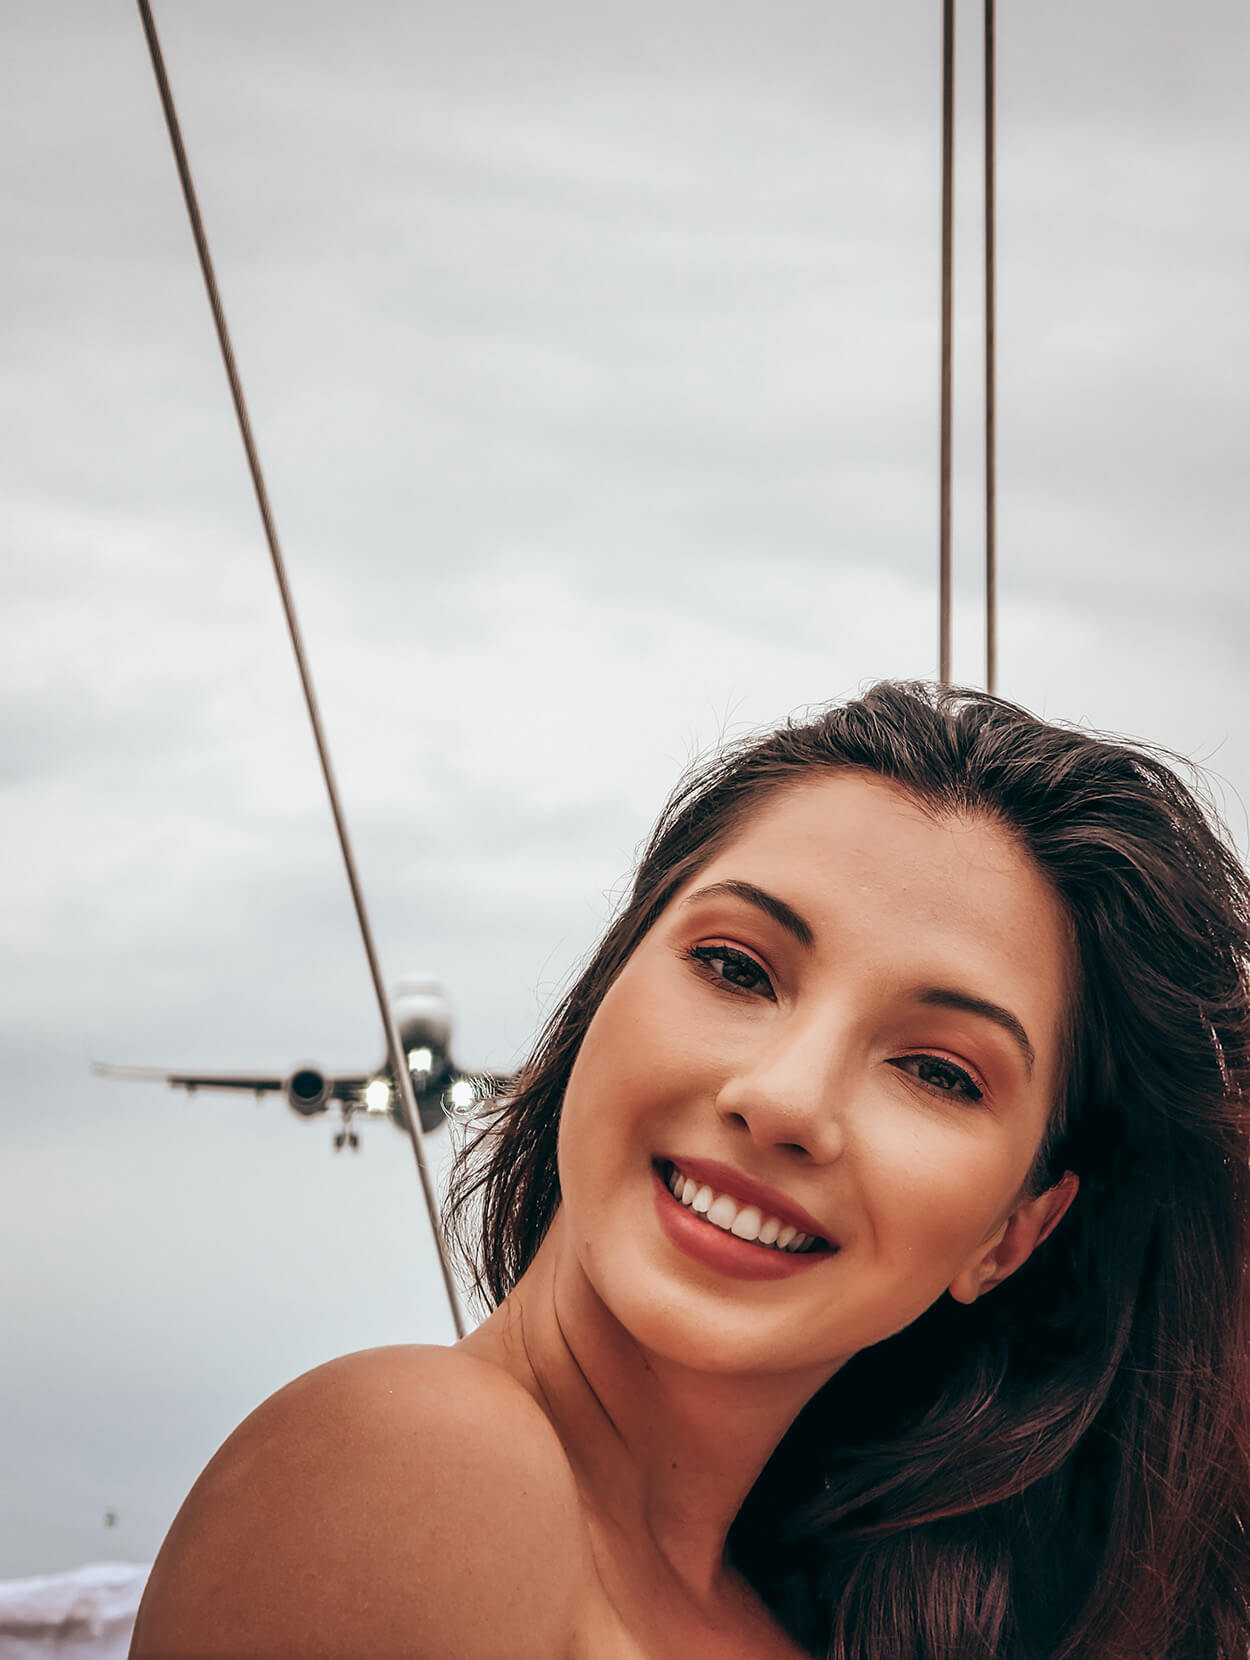 Mulher jovem dde cabelos castanhos sorrindo enquanto avião passa ao fundo